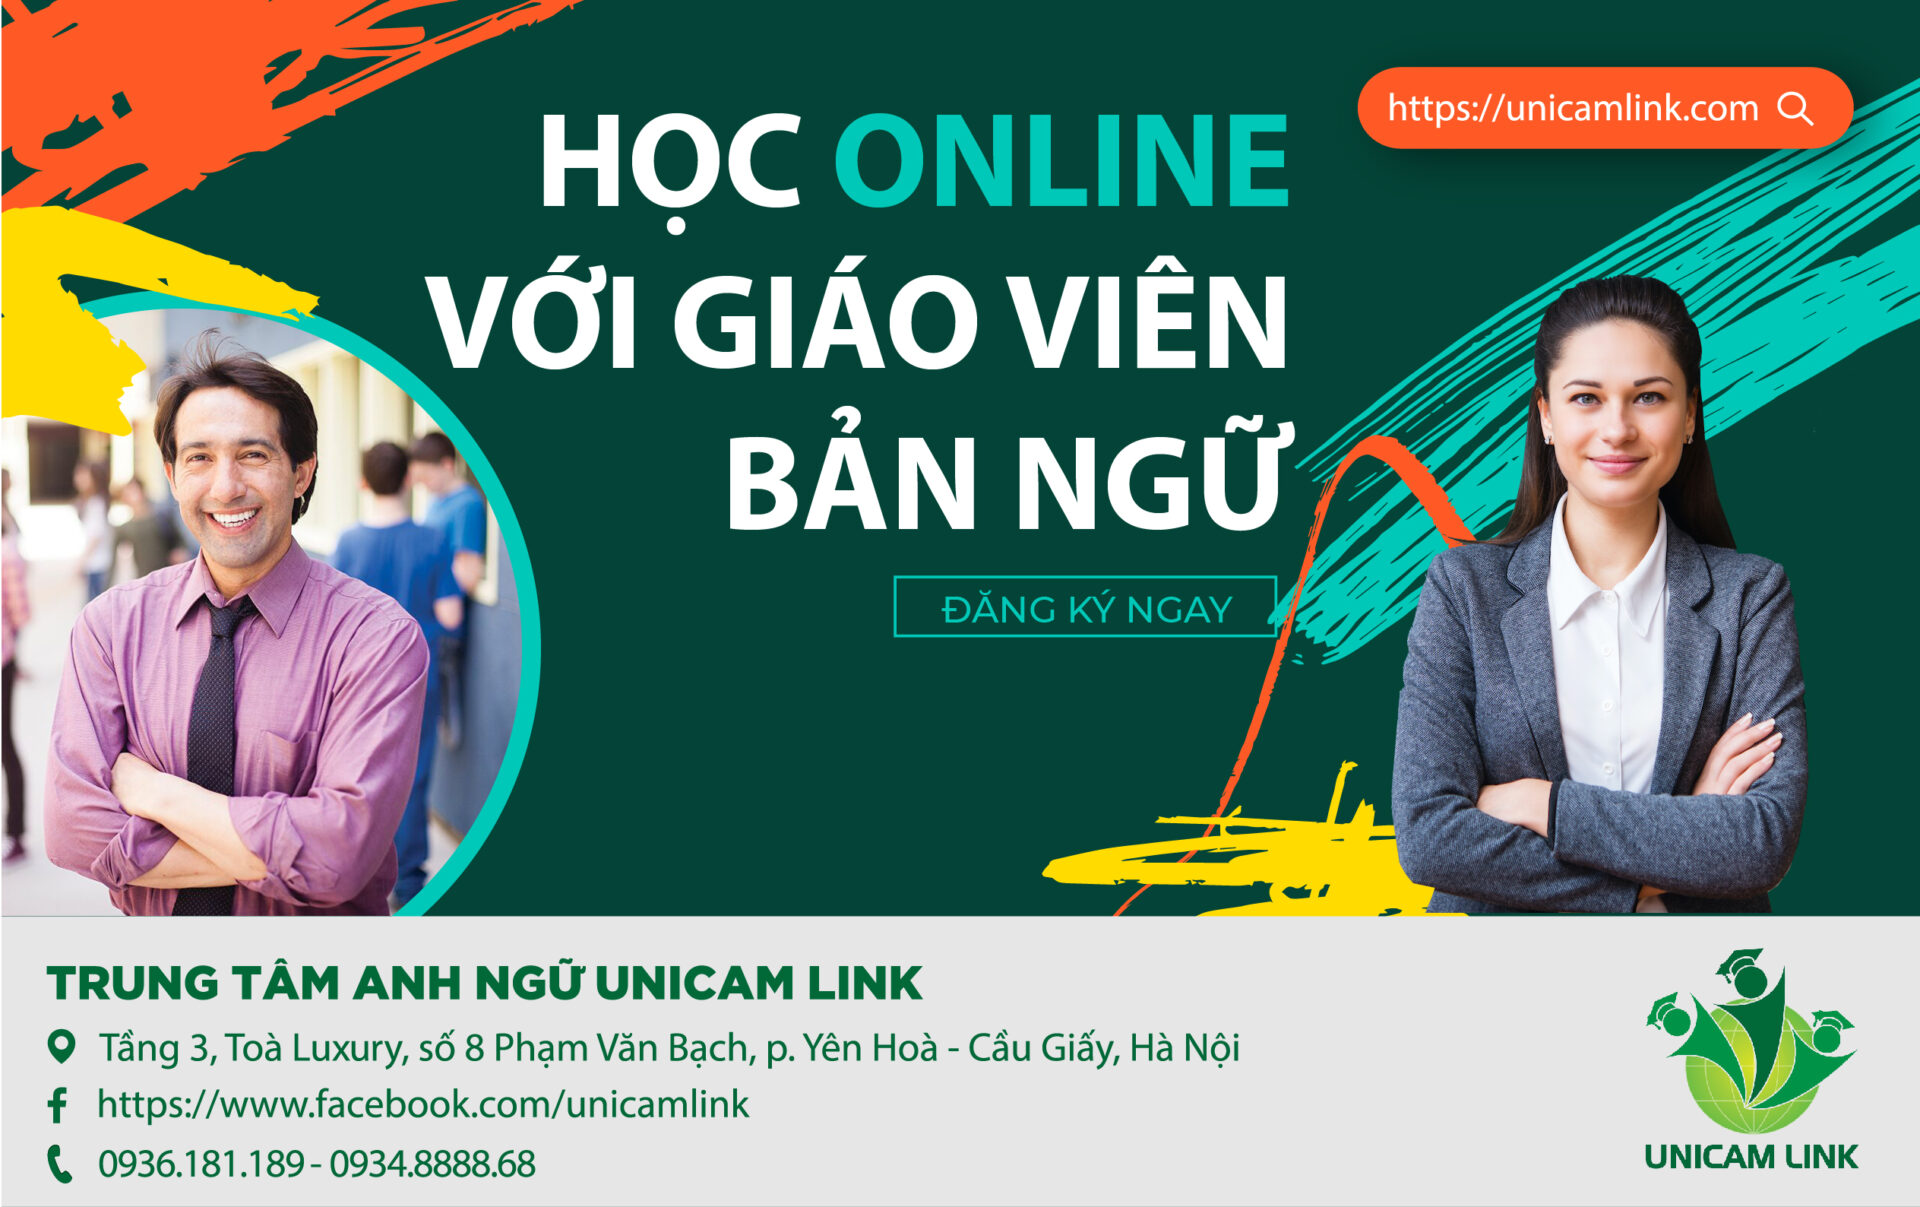 Unicamlink tuyển sinh lớp học Tiếng Anh với GV bản ngữ